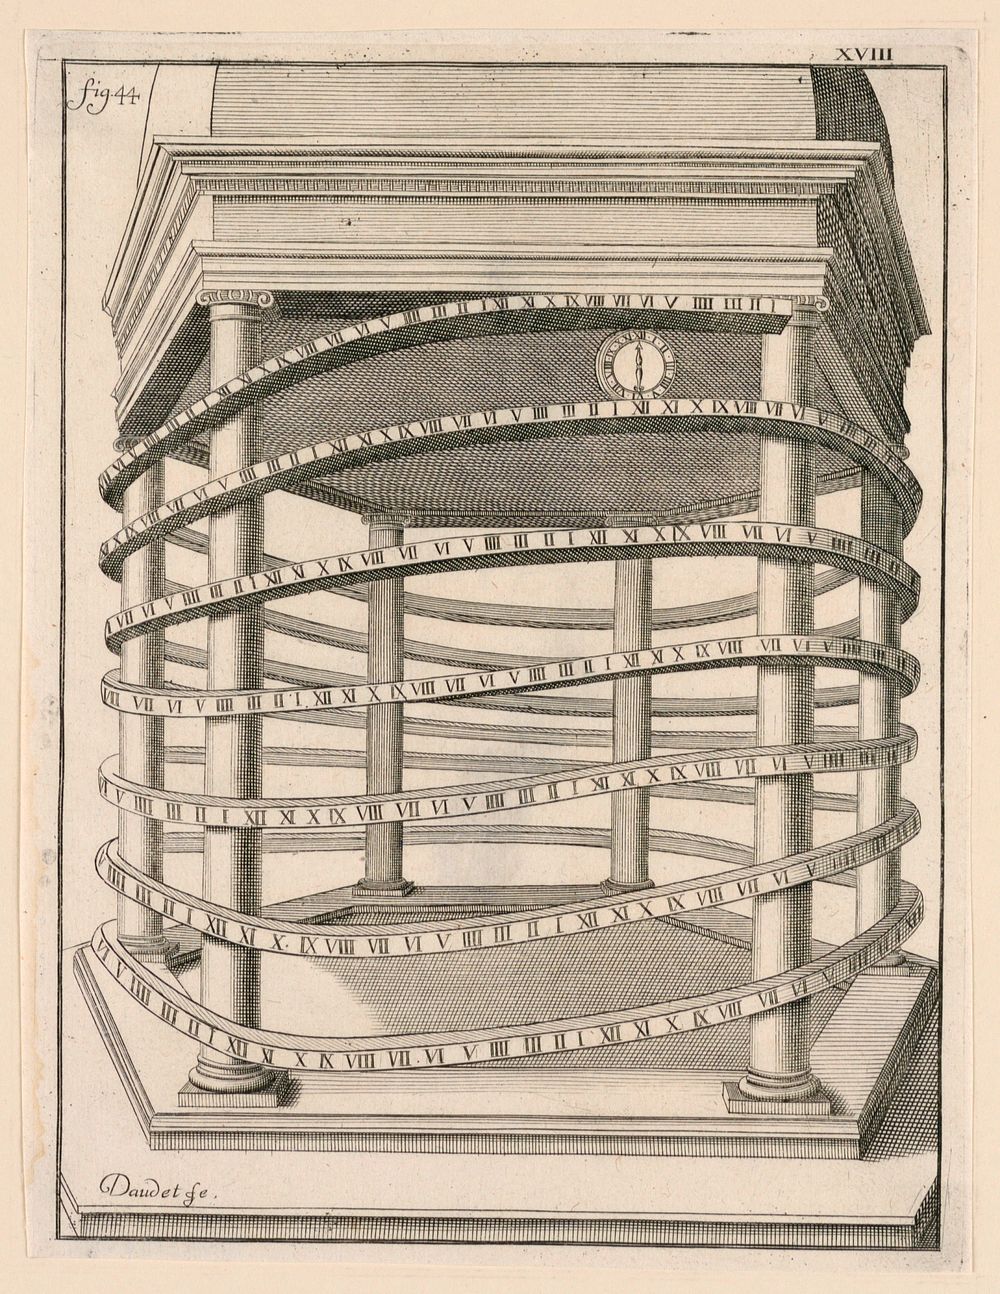 Design For a Clock, pl. XVII from "Recueil d'Ouvrages Curieux de Mathematique et de Mecanique, ou Description du Cabinet"